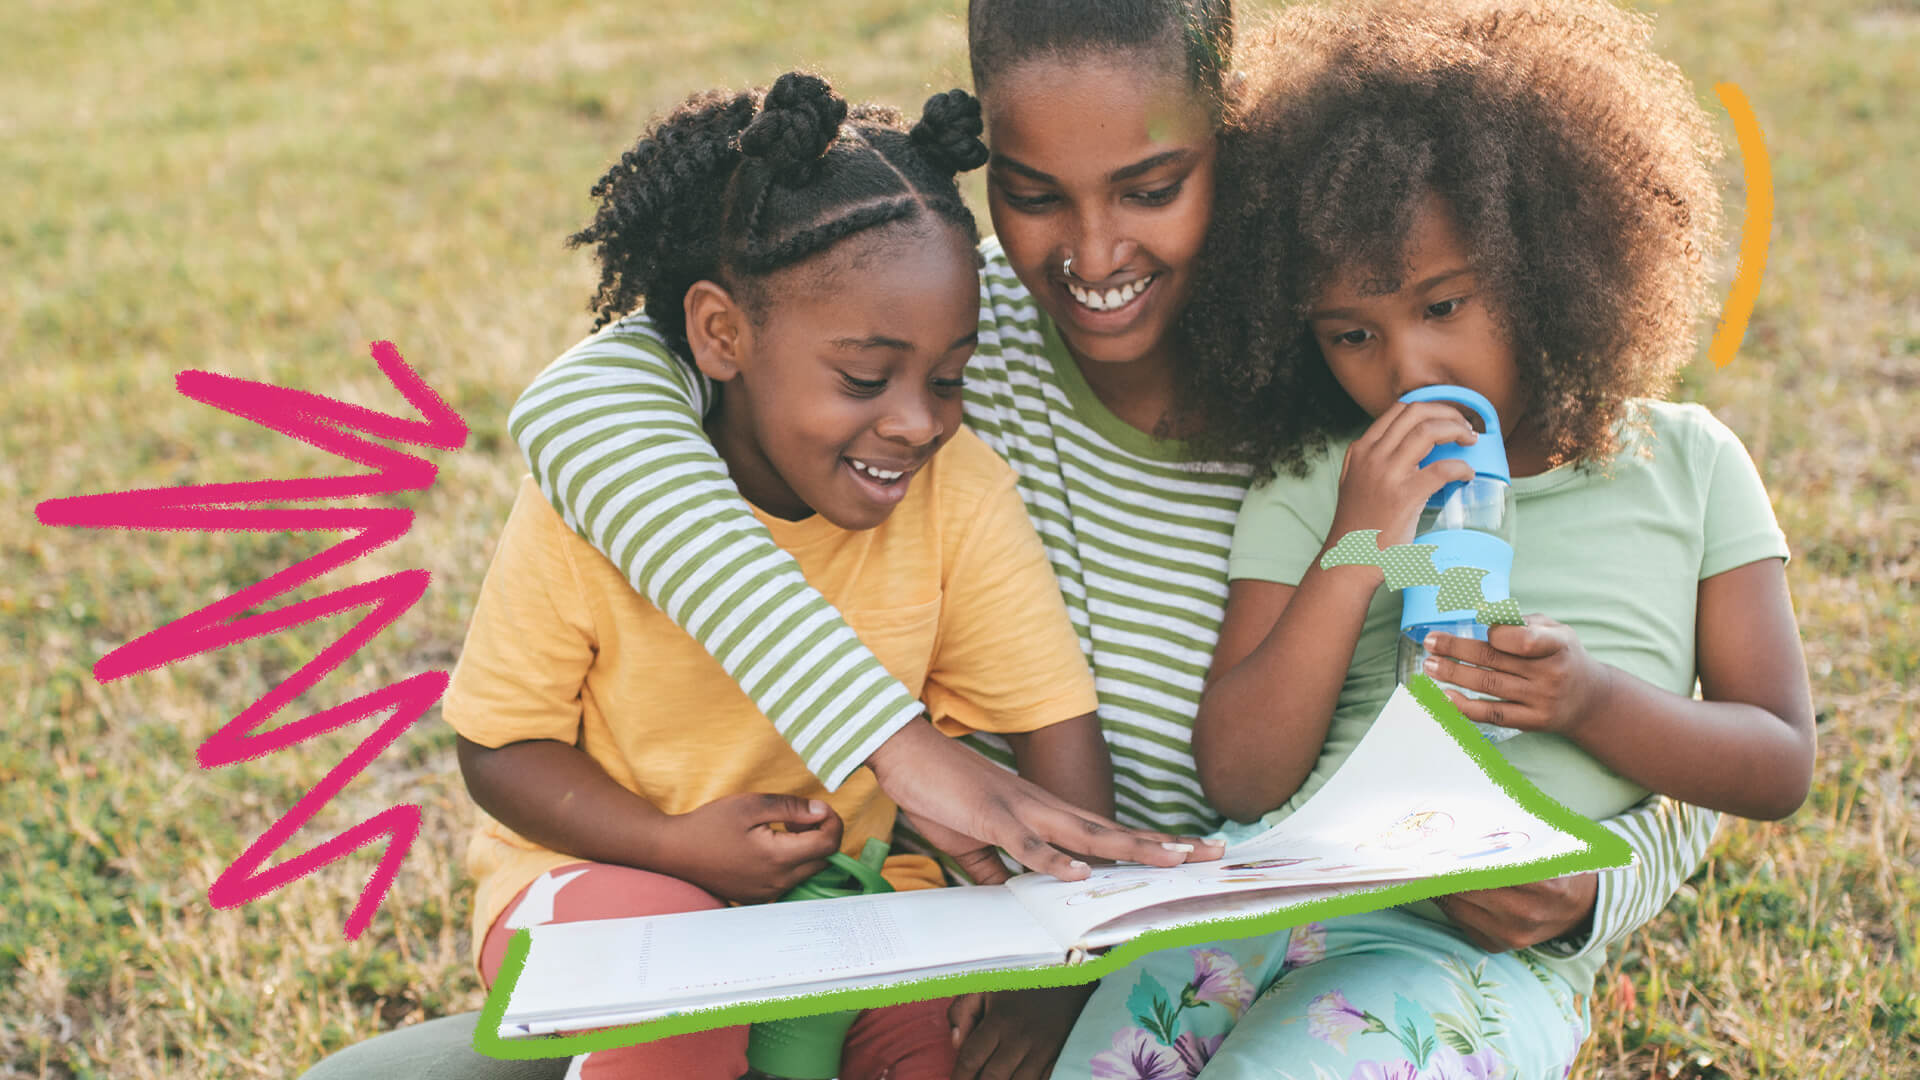 Duas meninas negras leem um livro com uma mulher negra. A imagem possui rabiscos coloridos e ilustra uma matéria sobre autoras negras para conhecer no Dia Internacional da Mulher Negra Latino-americana e Caribenha.